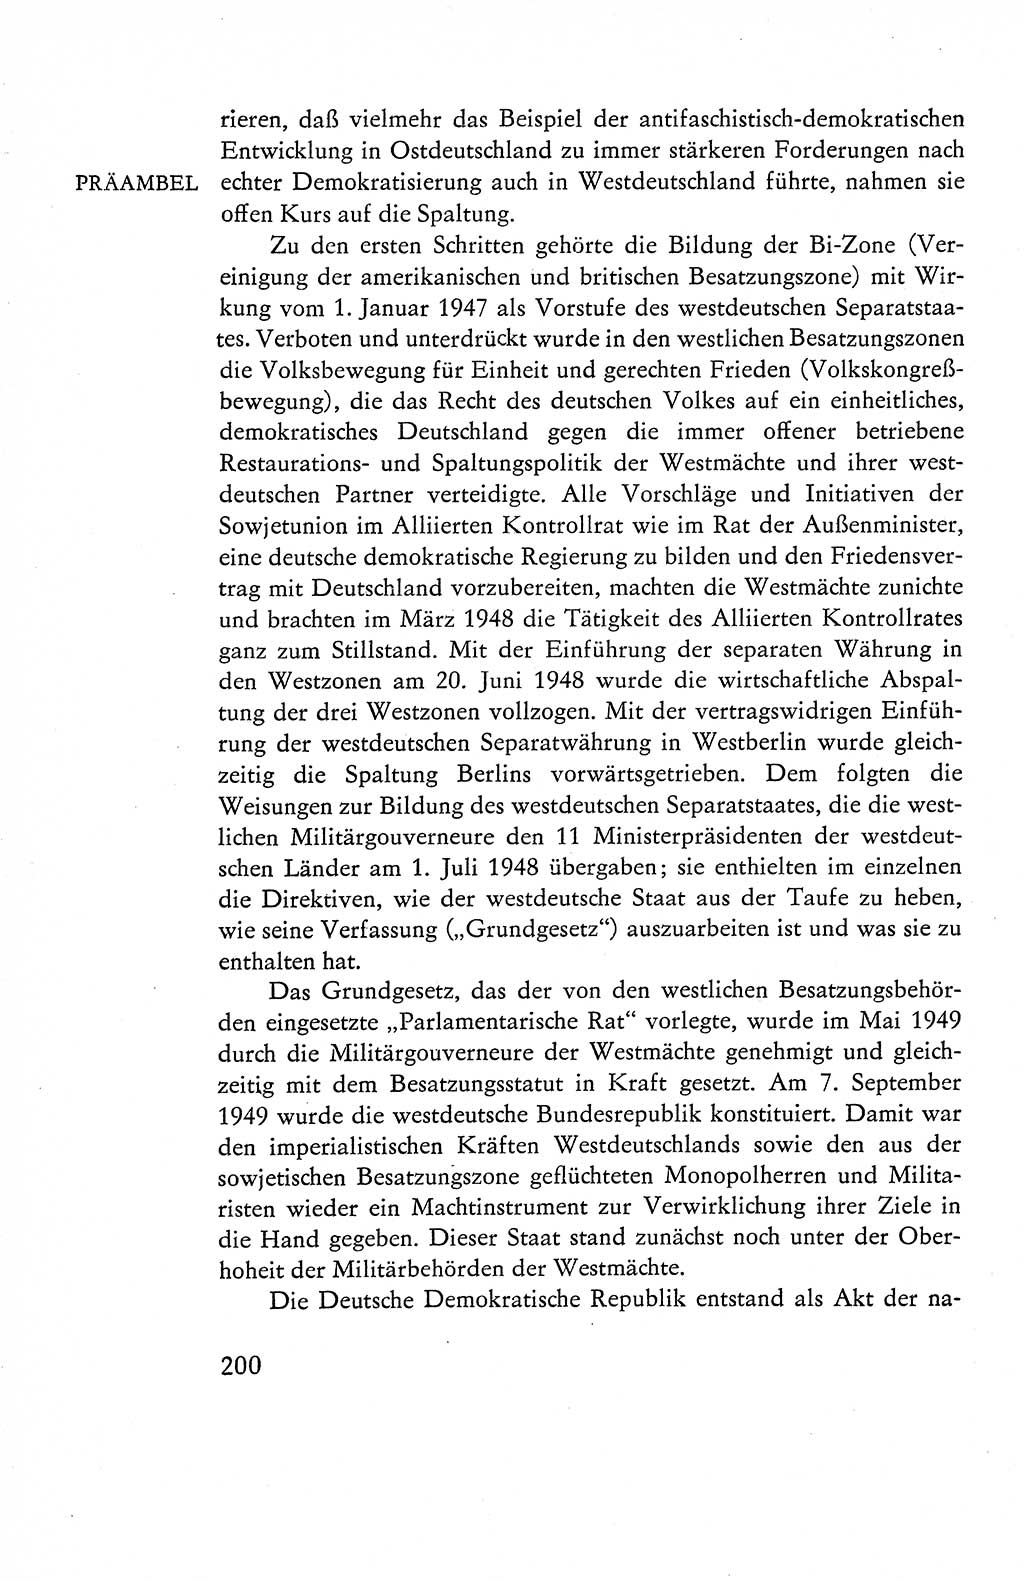 Verfassung der Deutschen Demokratischen Republik (DDR), Dokumente, Kommentar 1969, Band 1, Seite 200 (Verf. DDR Dok. Komm. 1969, Bd. 1, S. 200)